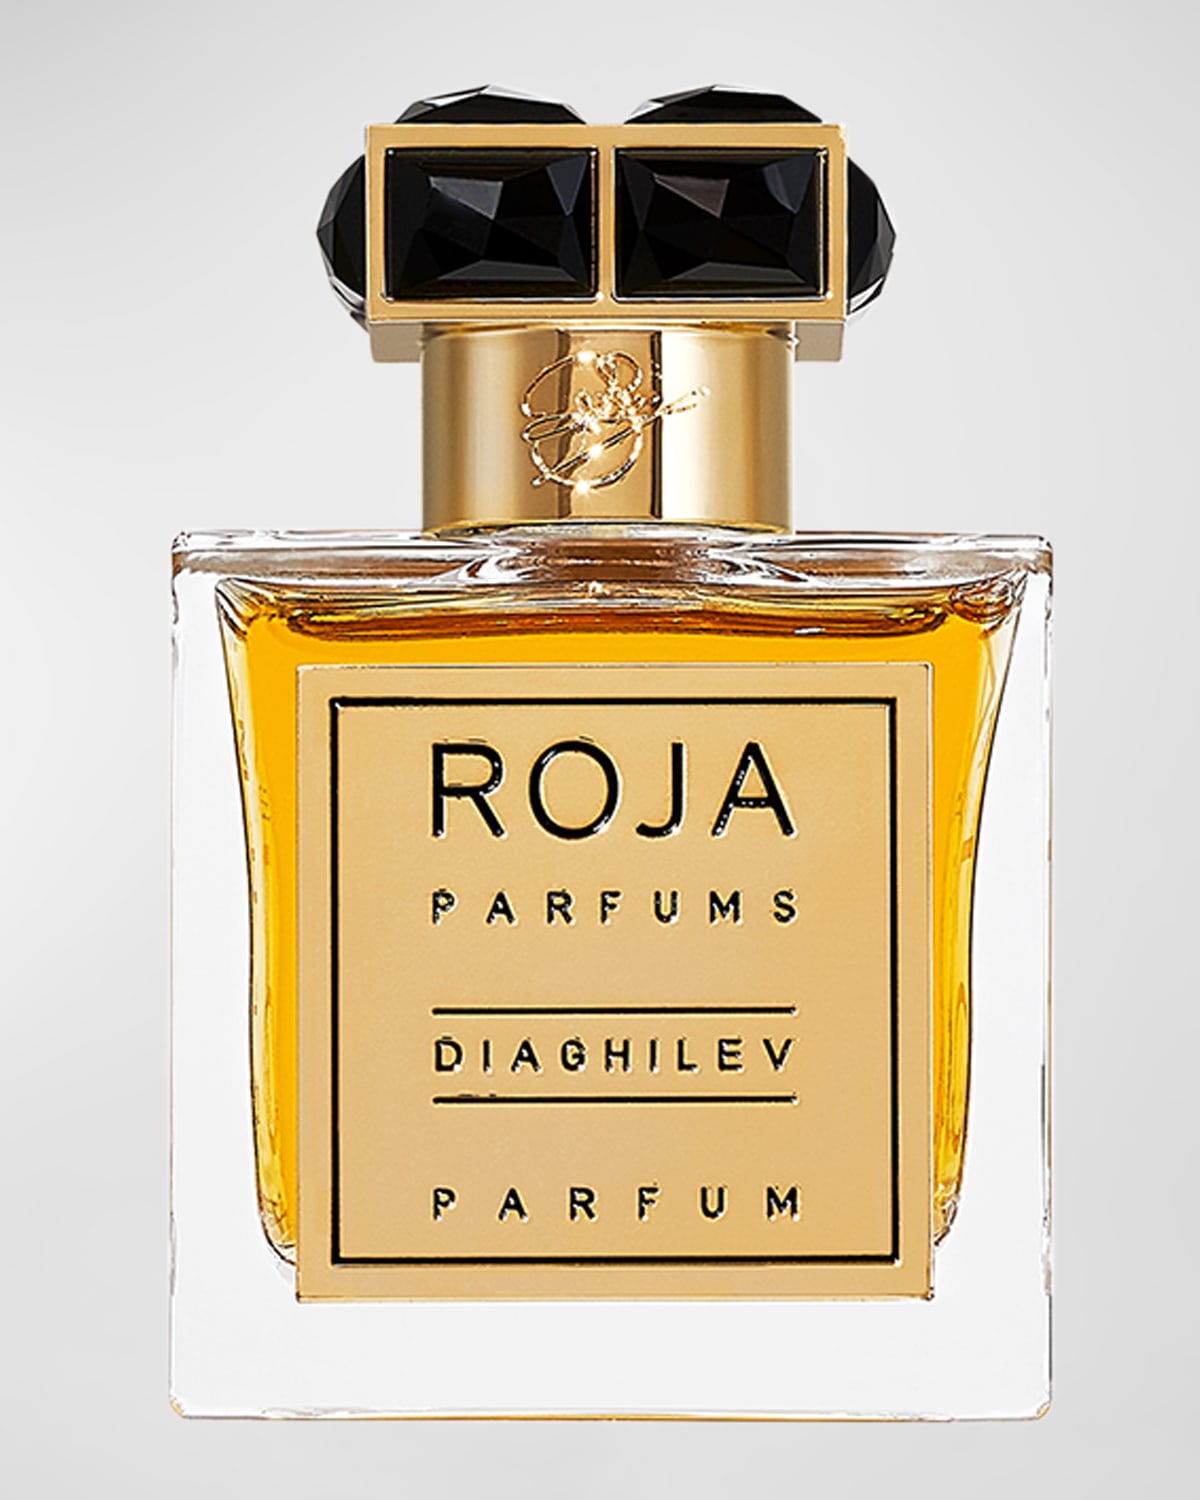 Diaghilev Parfum, 3.4 oz.